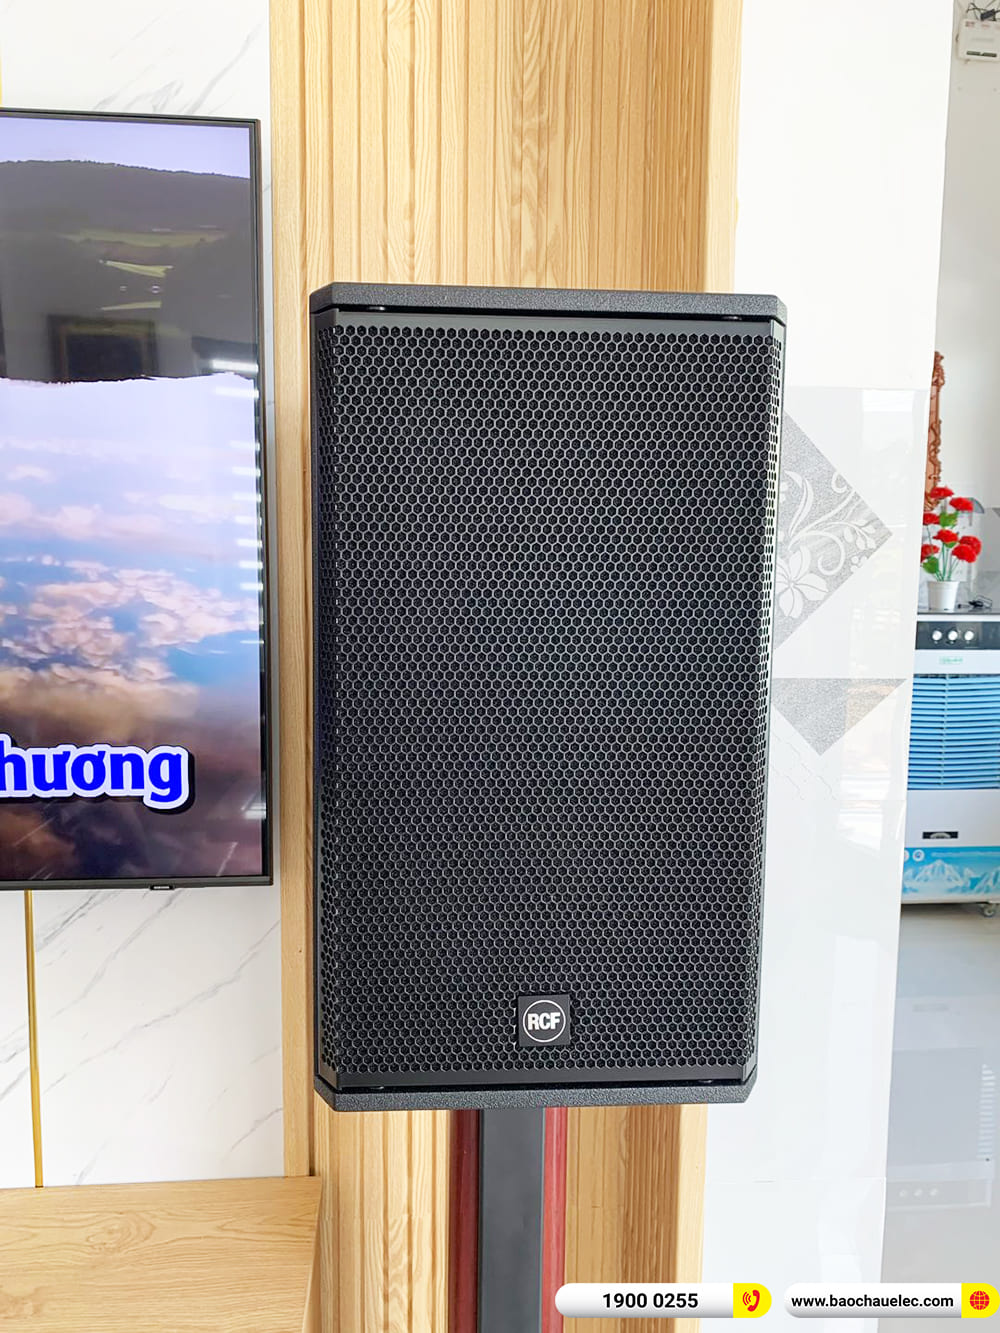 Lắp đặt dàn karaoke RCF hơn 90tr cho anh Hiếu ở Quảng Nam